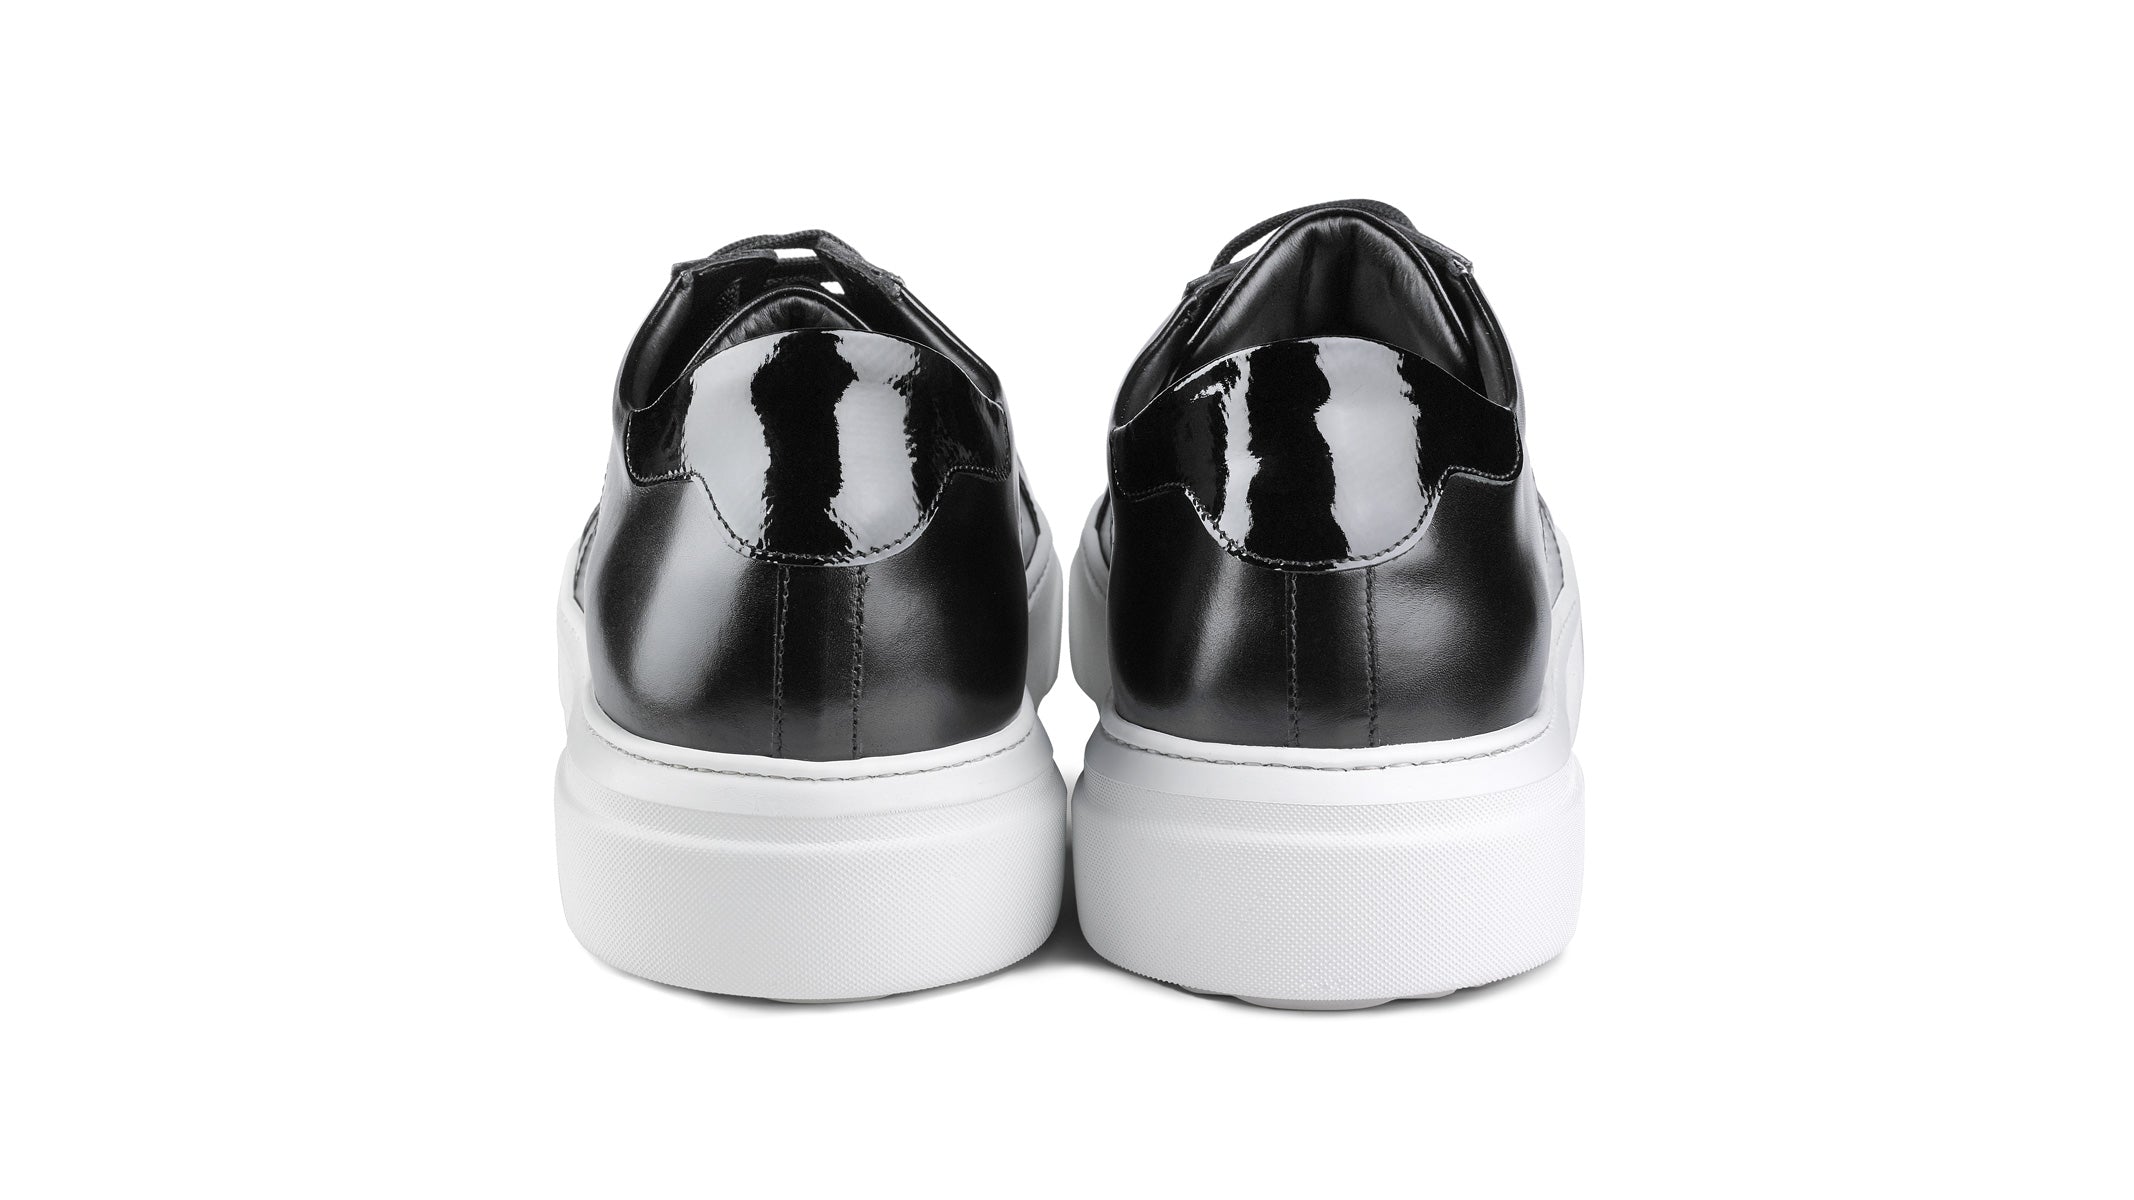 Sneakers HEXIS 2.0 in pelle nera